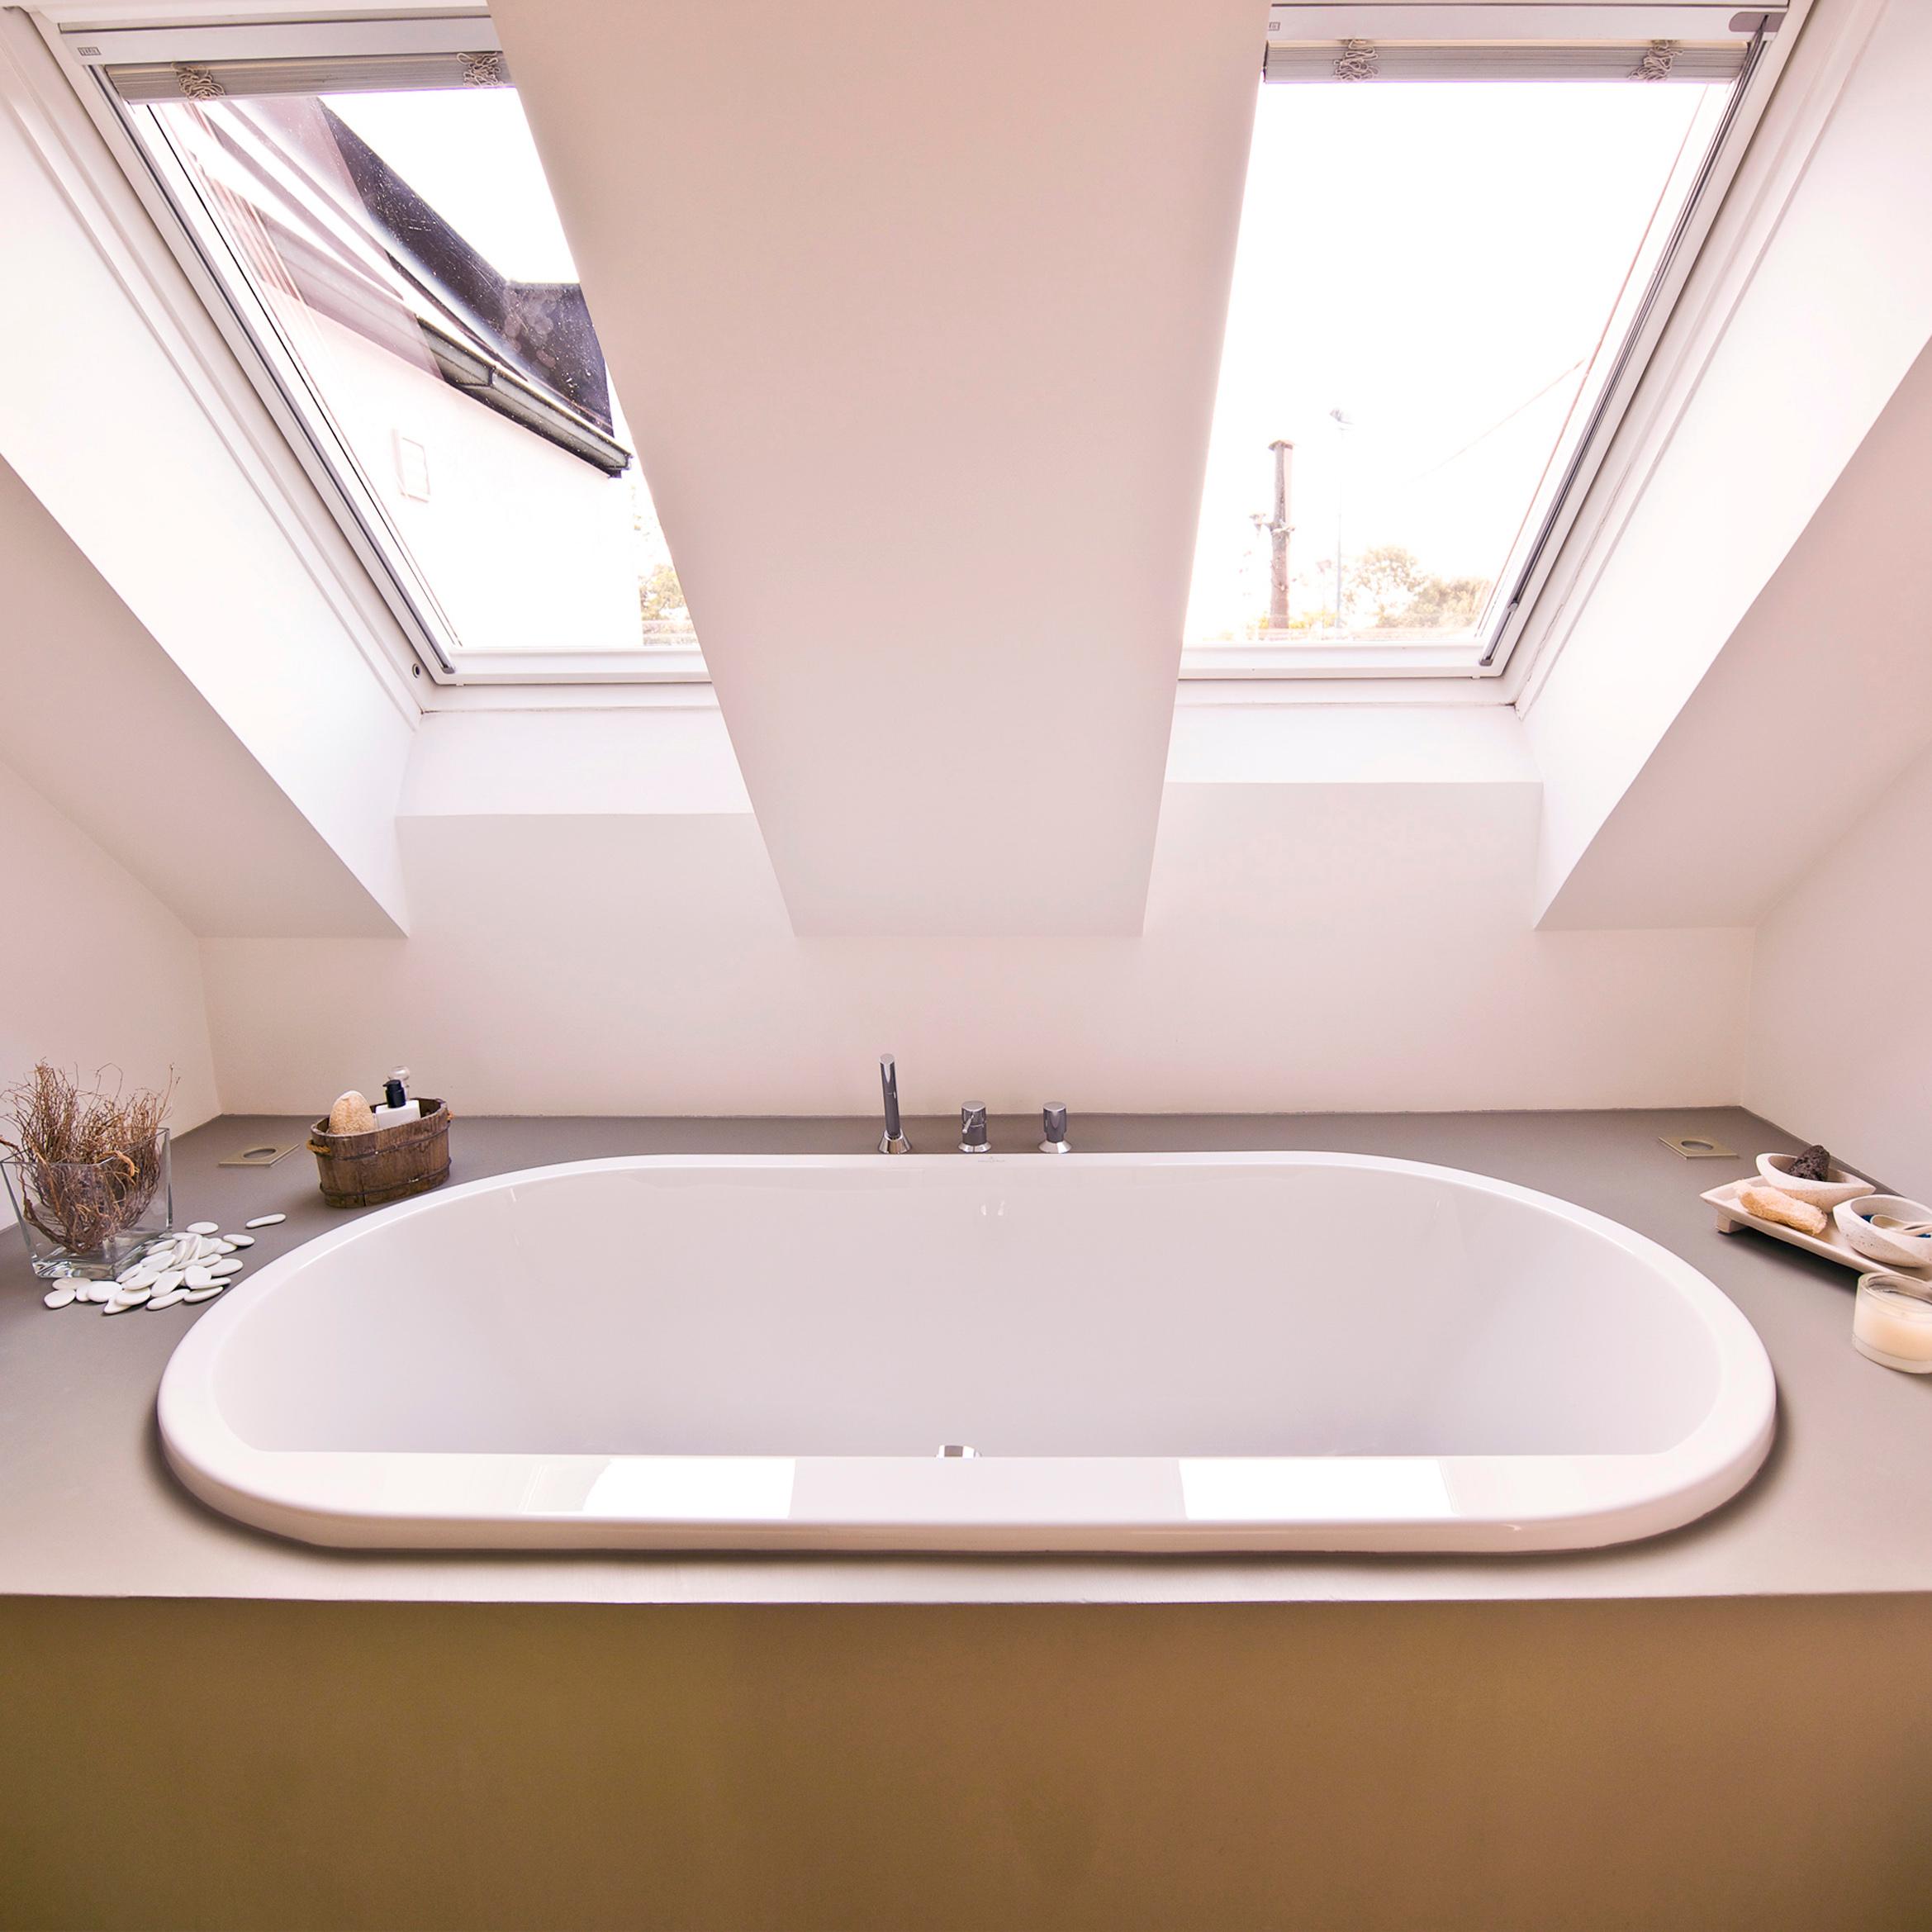 Badewanne in Podest eingelassen #dachschräge #badewanne #badezimmer ©Zolaproduction